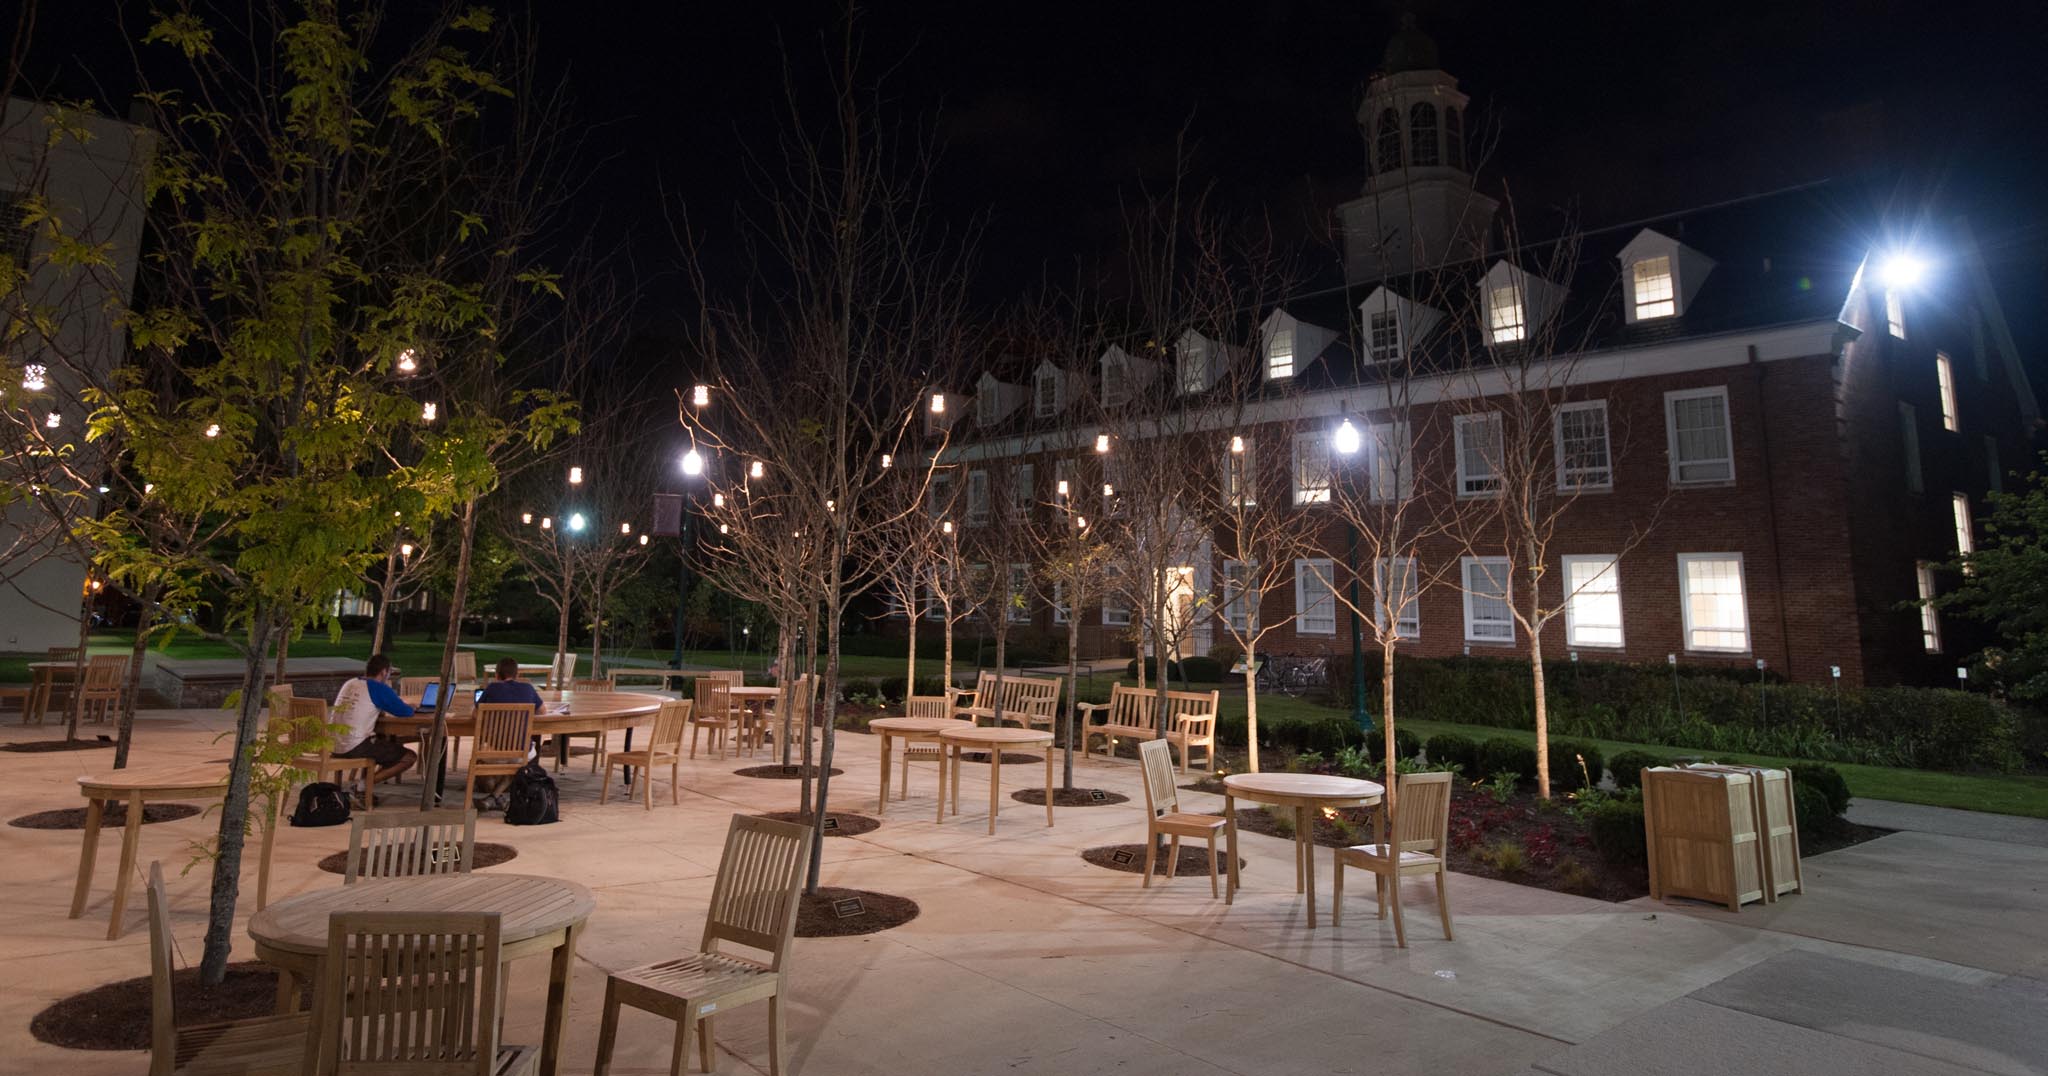 alumni plaza at night